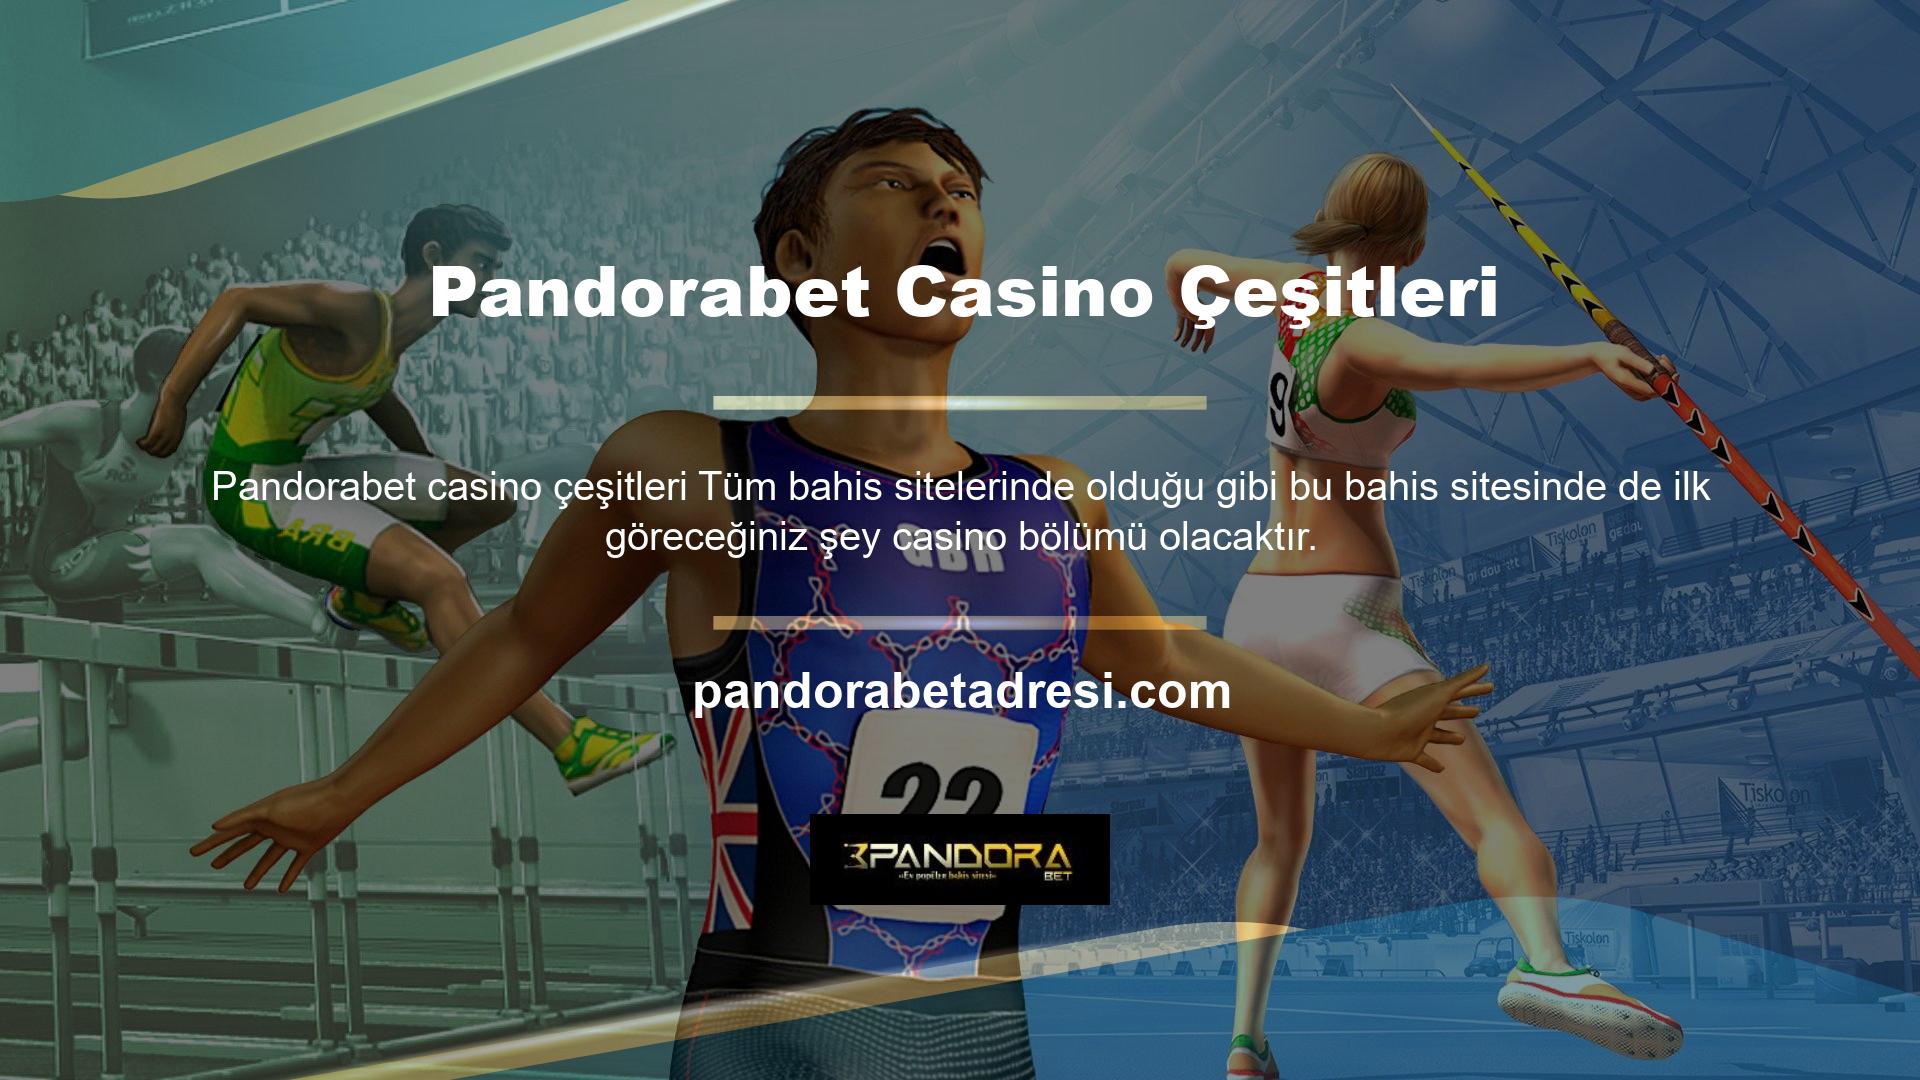 Peki ne tür Pandorabet casinoları var? Bu bölümde yer alan casino seçeneklerinin genel olarak slot makine türlerinden oluştuğunu görmekteyiz